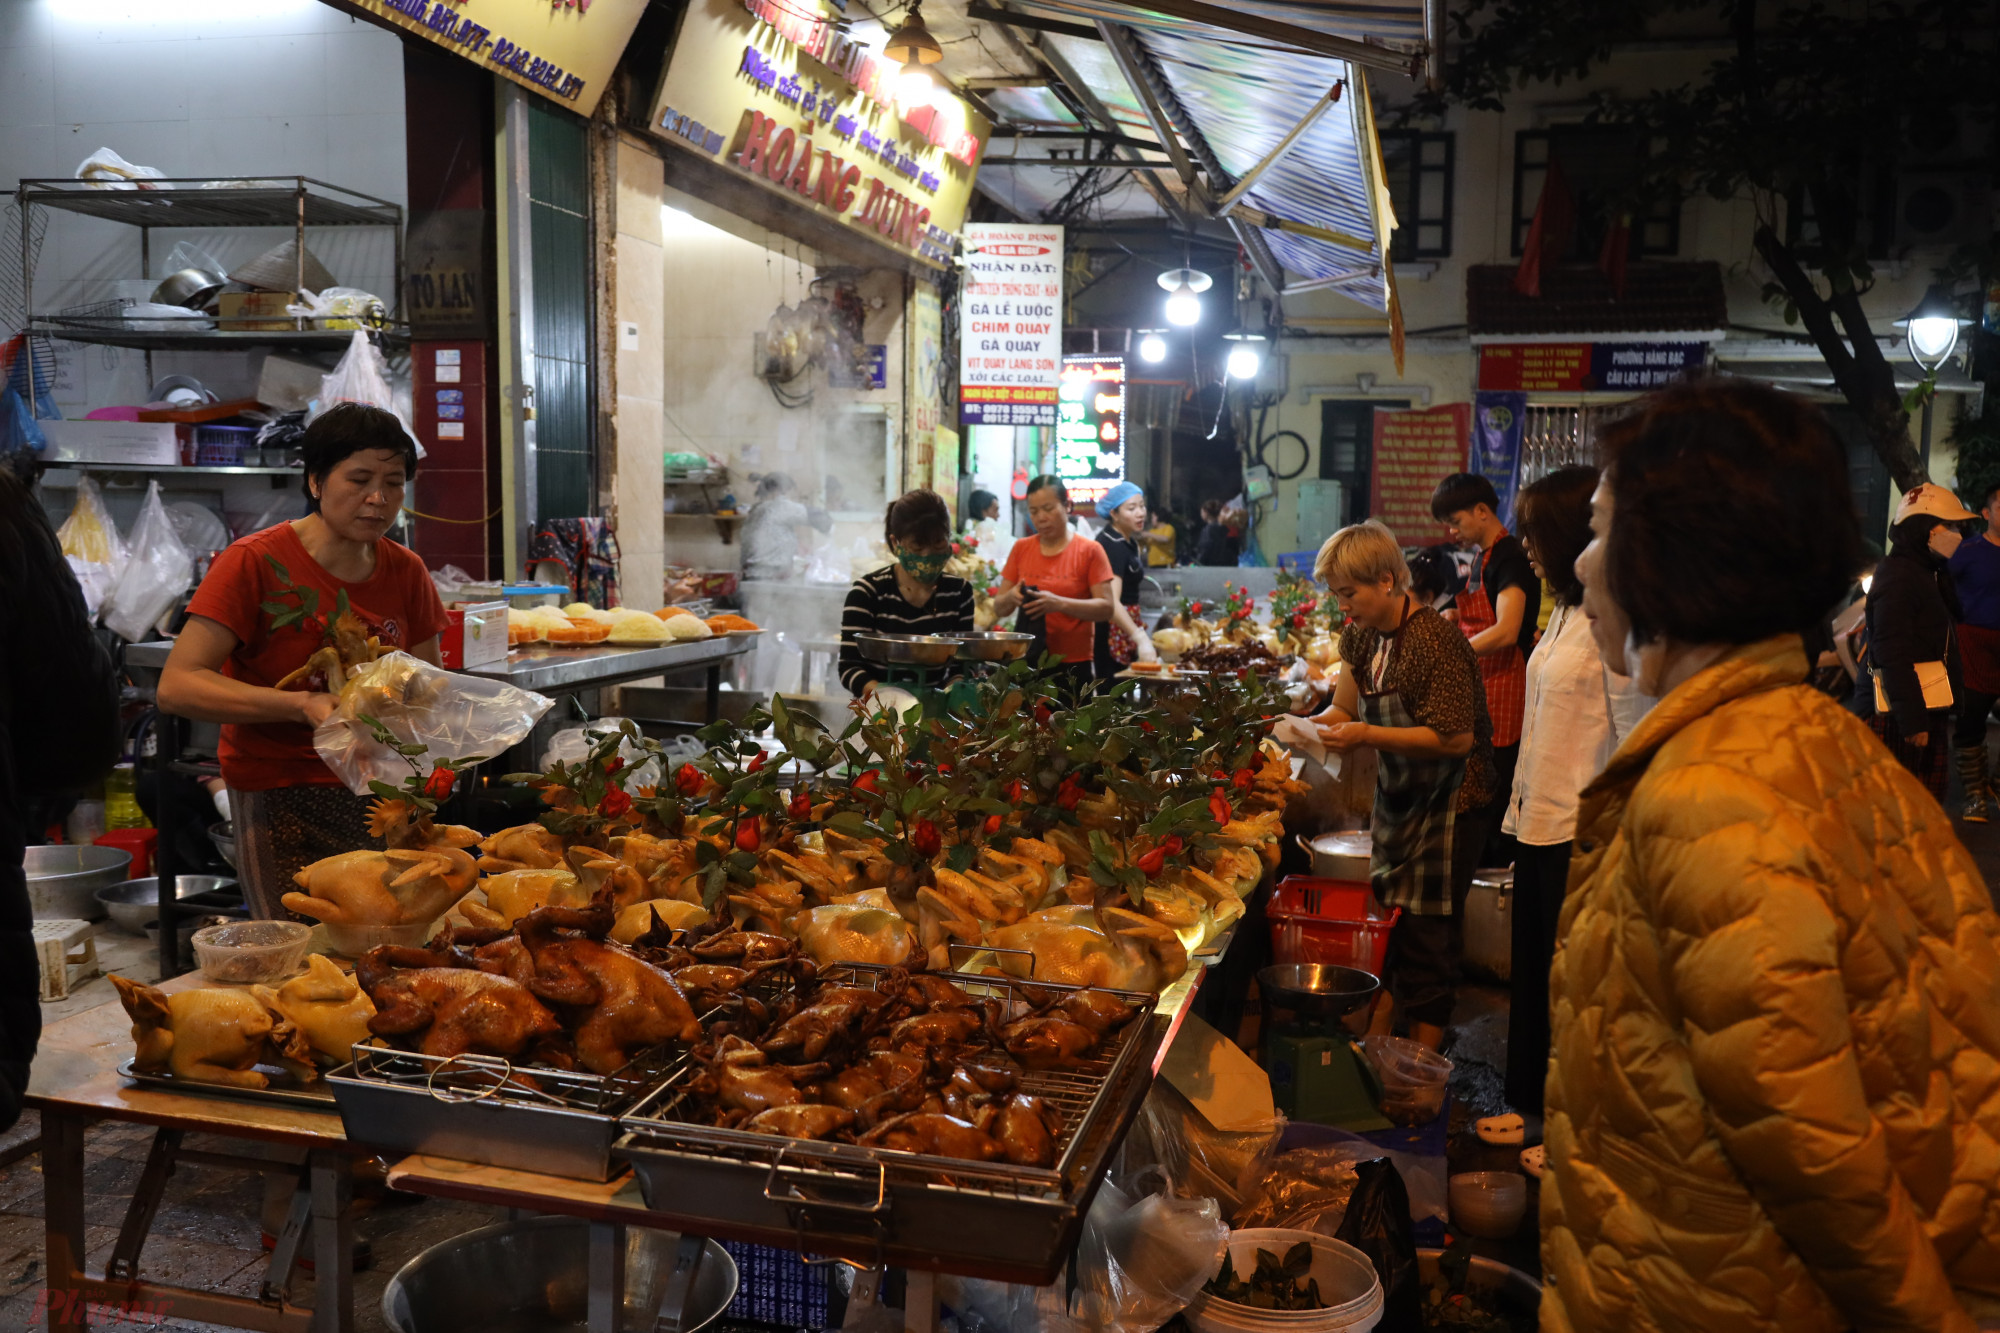 gày 29 Tết, chợ Hàng Bè, phố Gia Ngư tại Hà Nội gần như lúc nào cũng ùn tắc. Các cửa hàng bán gà ngậm hoa hồng để cúng đắt hàng, nhiều lúc người mua phải tranh nhau để nhận hàng đã đặt trước